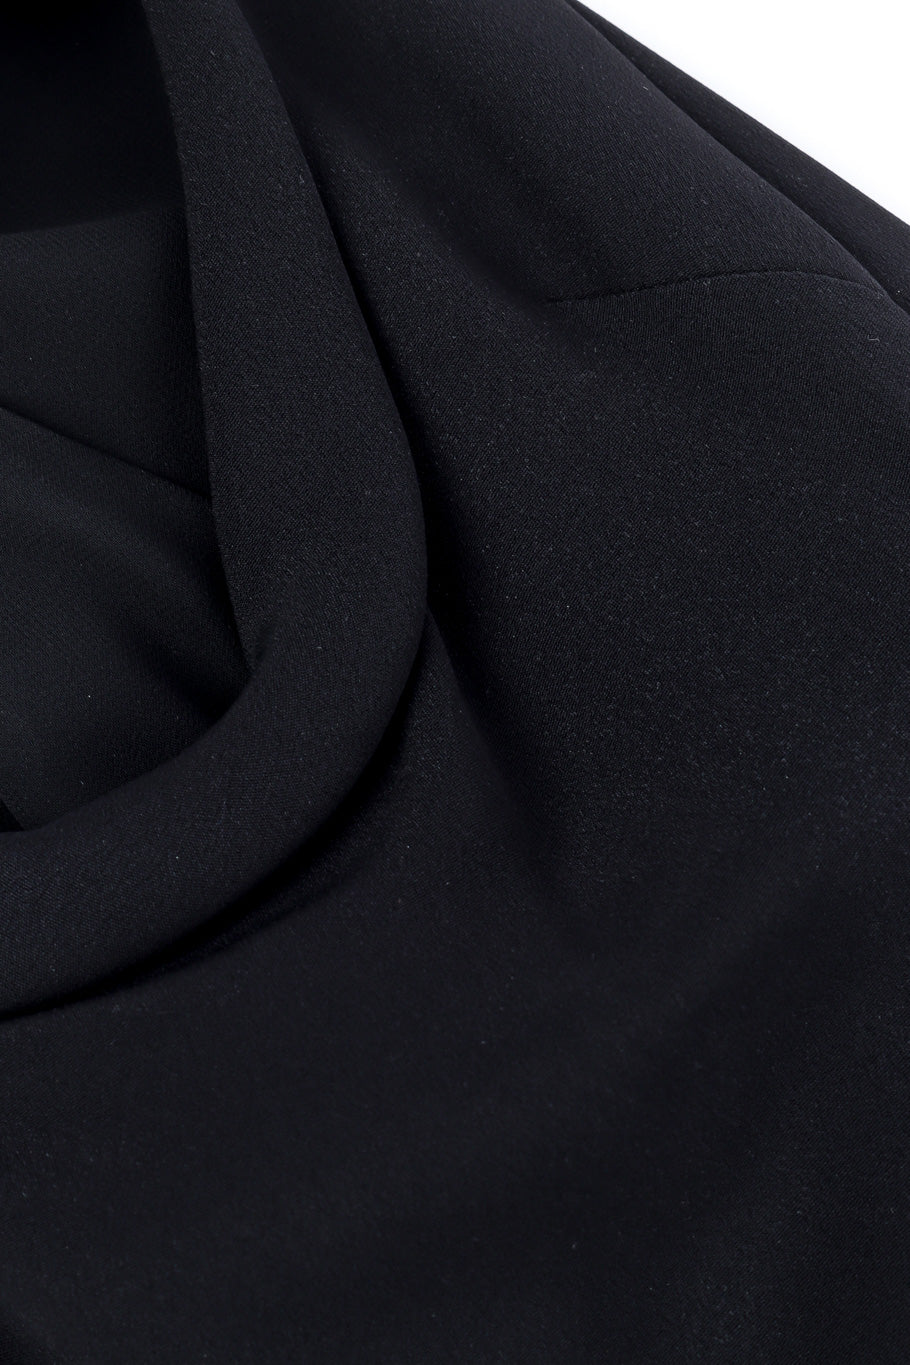 Valentino sleeveless maxi dress fabric detail @recessla